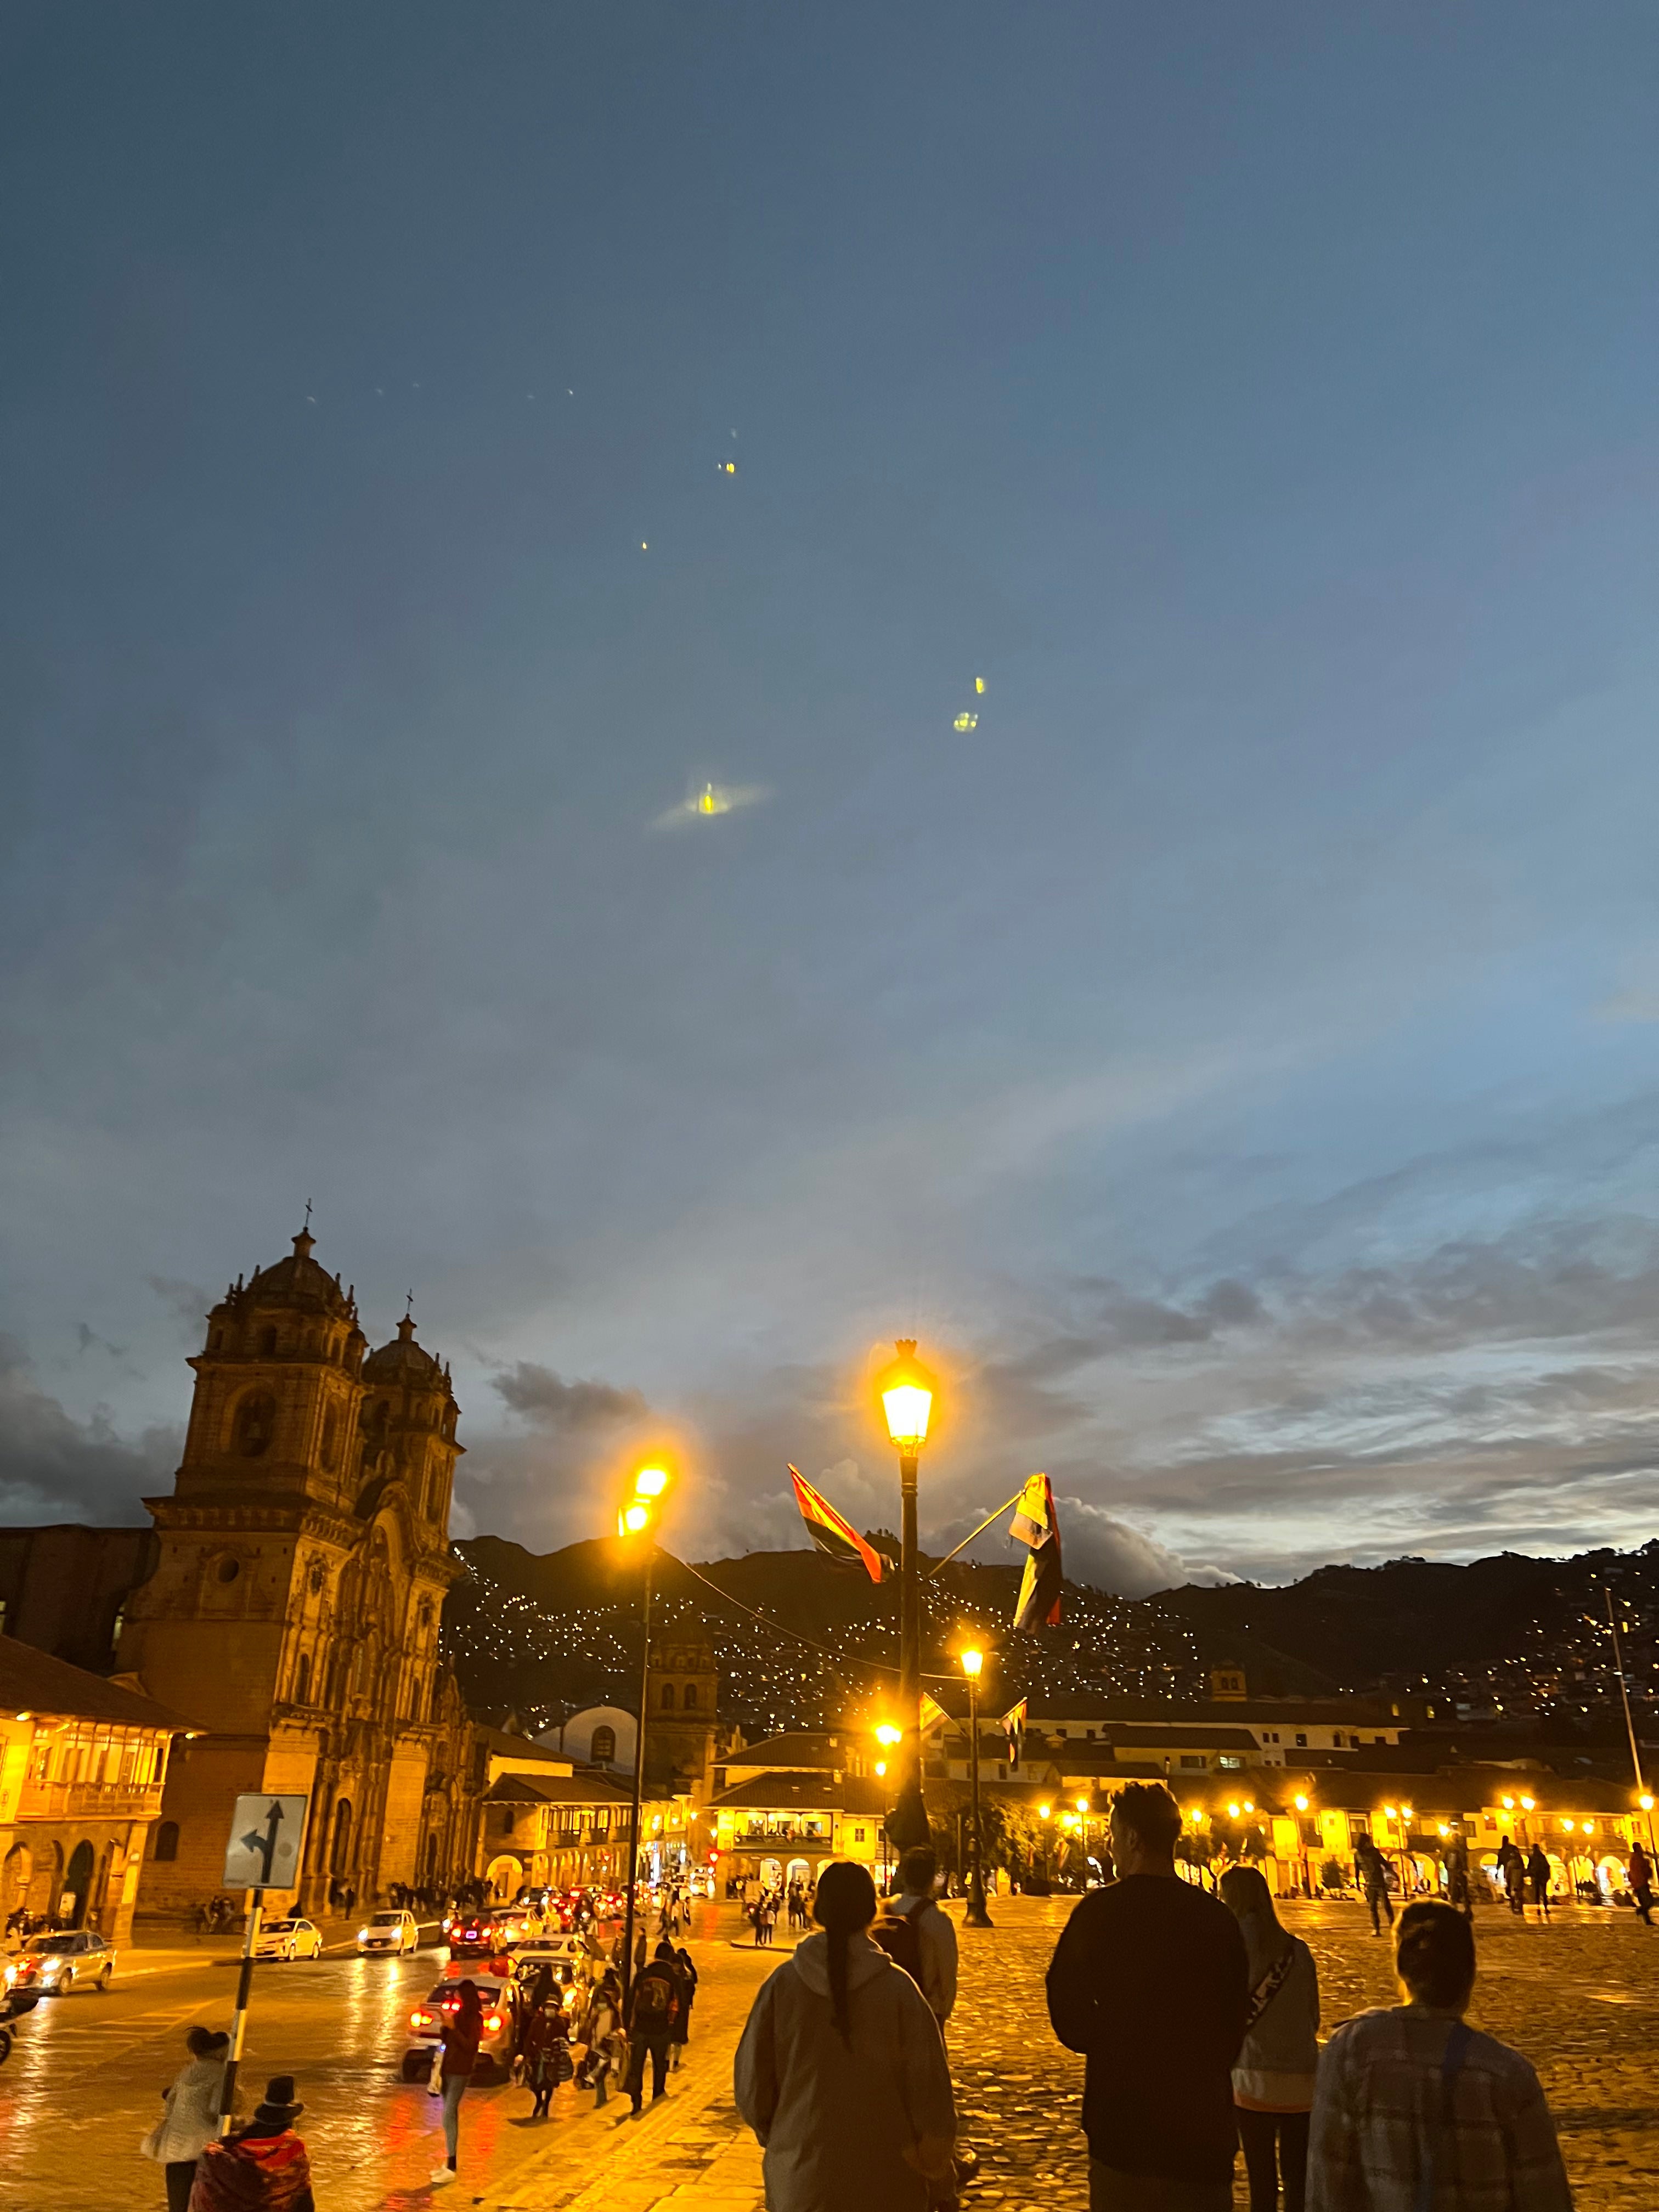 A plaza in Cusco, Peru at night